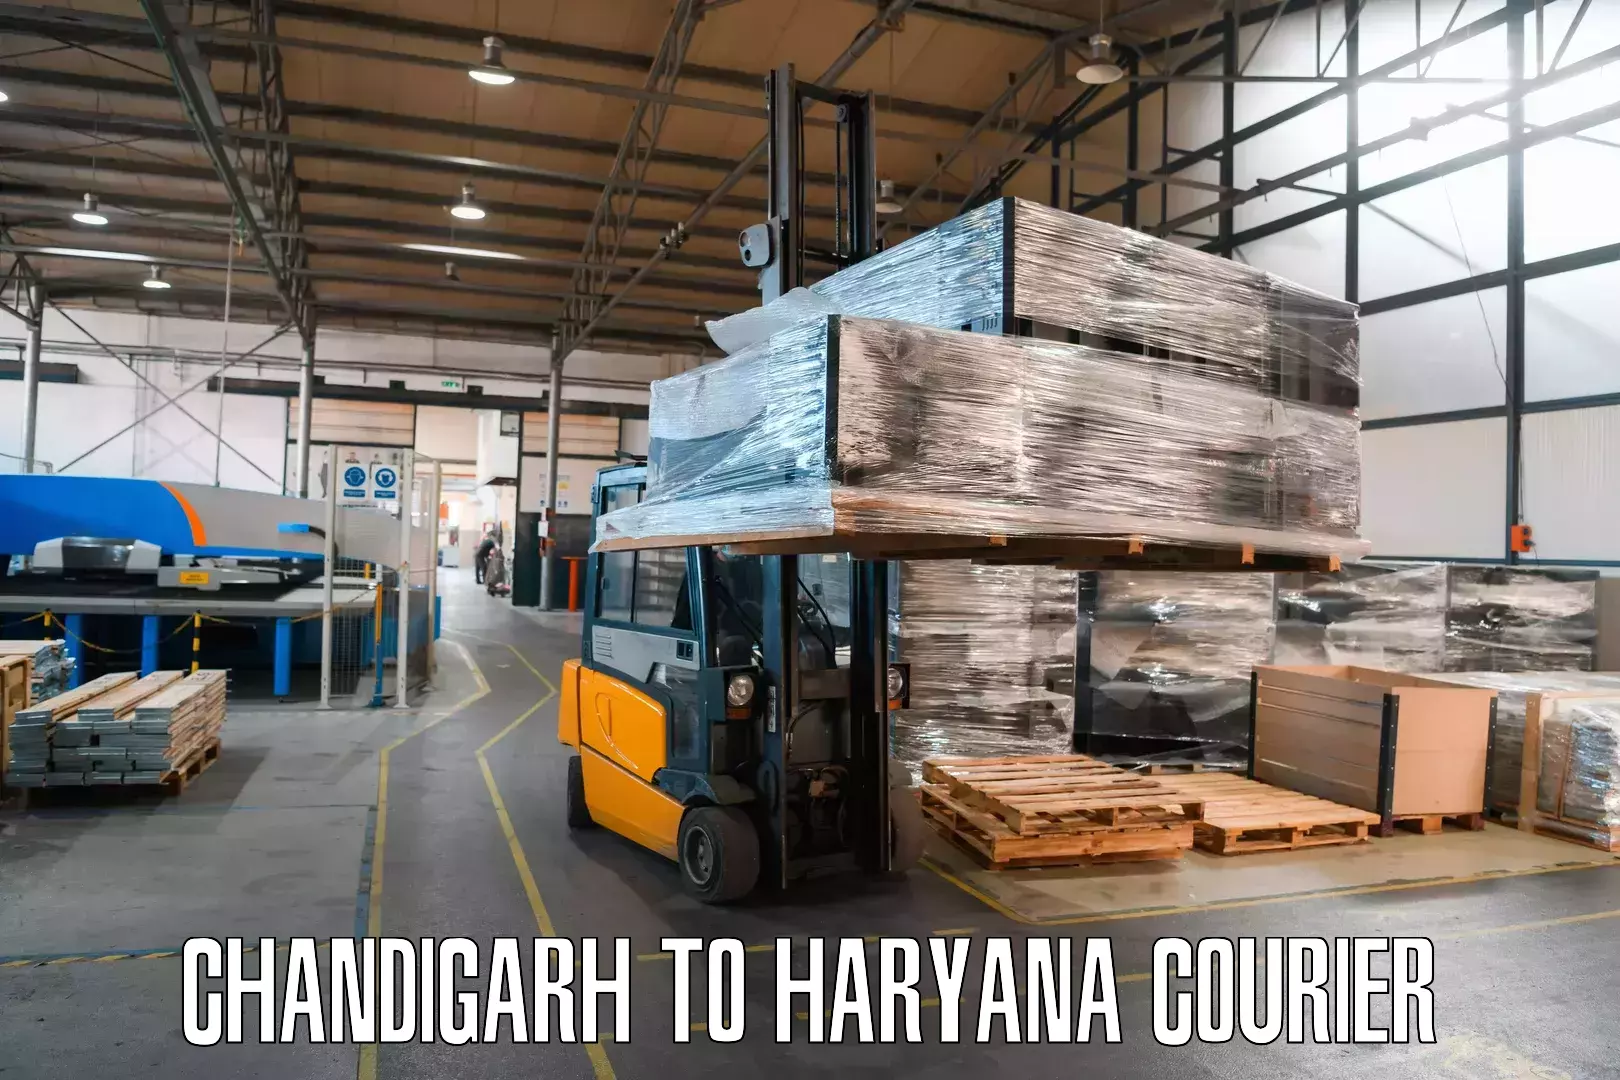 Customer-focused courier Chandigarh to Haryana